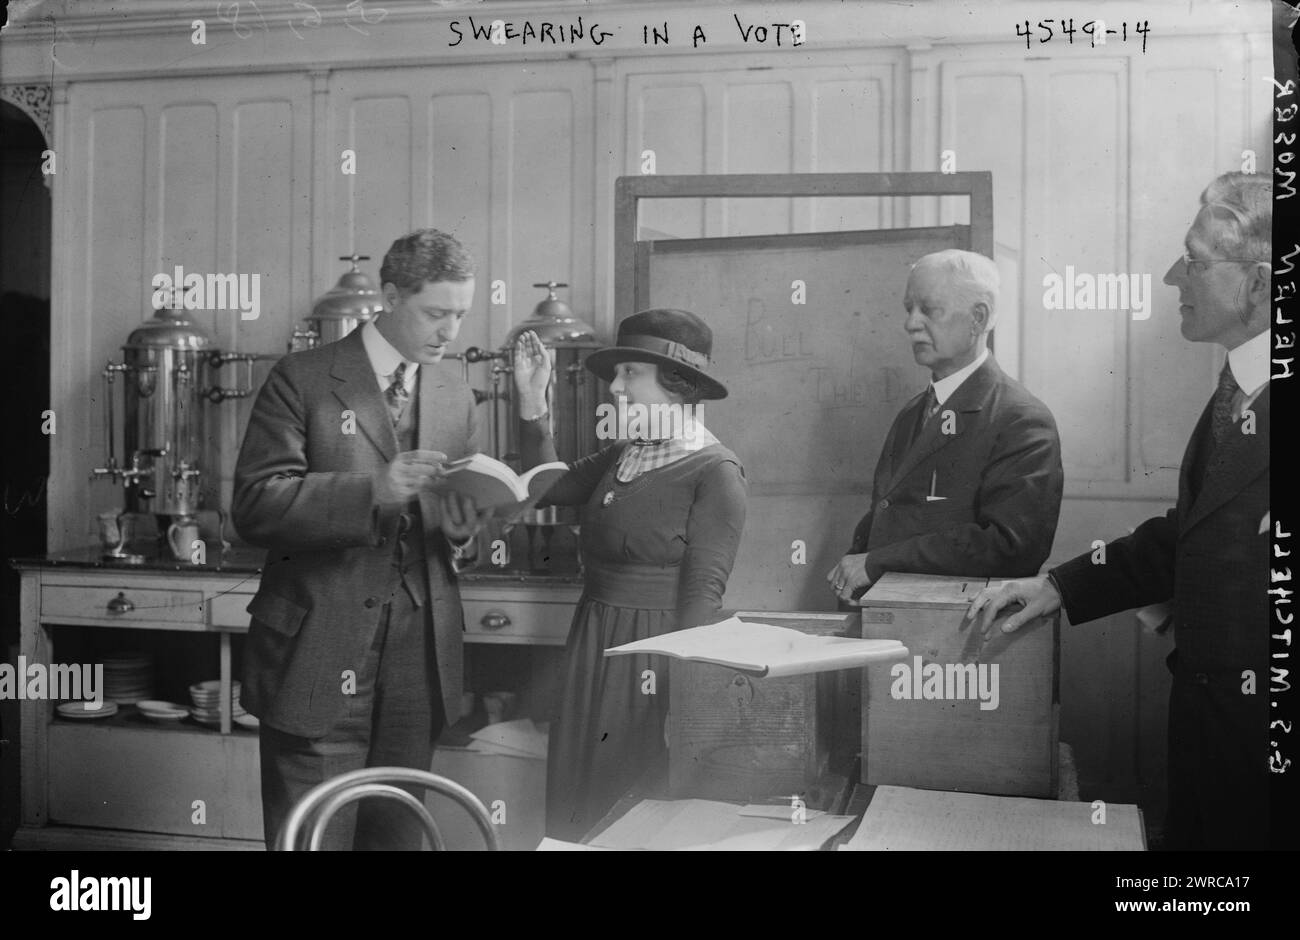 Helen Moser, G.S. Mitchell, Foto zeigt, dass Helen Moser am 5. März 1918, der ersten Wahl, bei der Frauen in New York City wählen konnten, vereidigt wurde., 5. März 1918, Glass negative, 1 negative: Glass Stockfoto